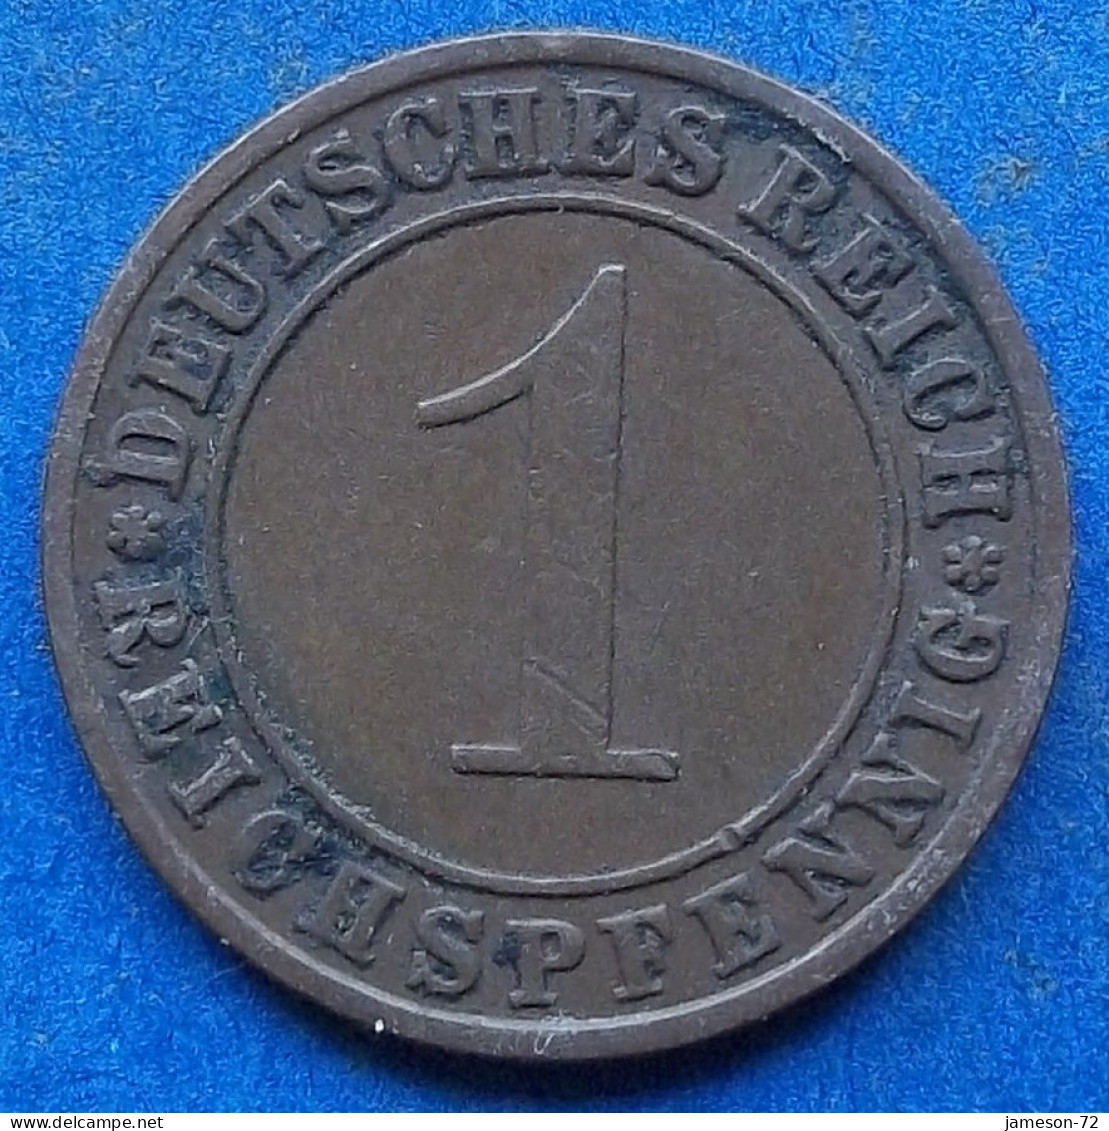 GERMANY - 1 Reichspfennig 1930 A KM# 37 Weimar Republic Reichsmark Coinage (1924-1938) - Edelweiss Coins - 1 Rentenpfennig & 1 Reichspfennig